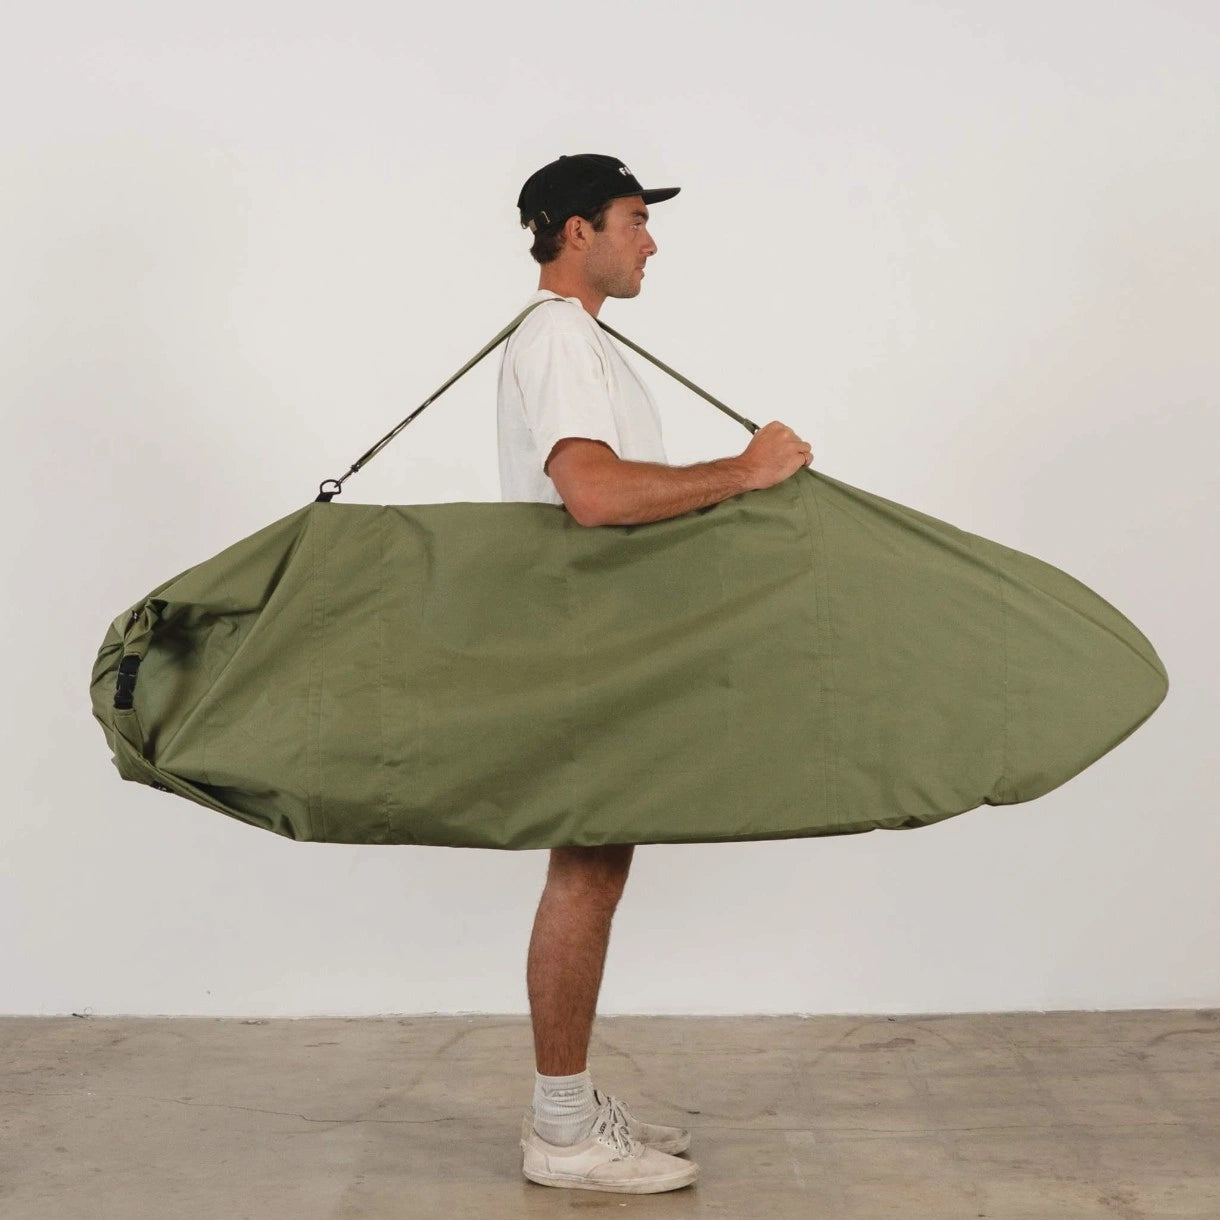 6ft surfboard bag